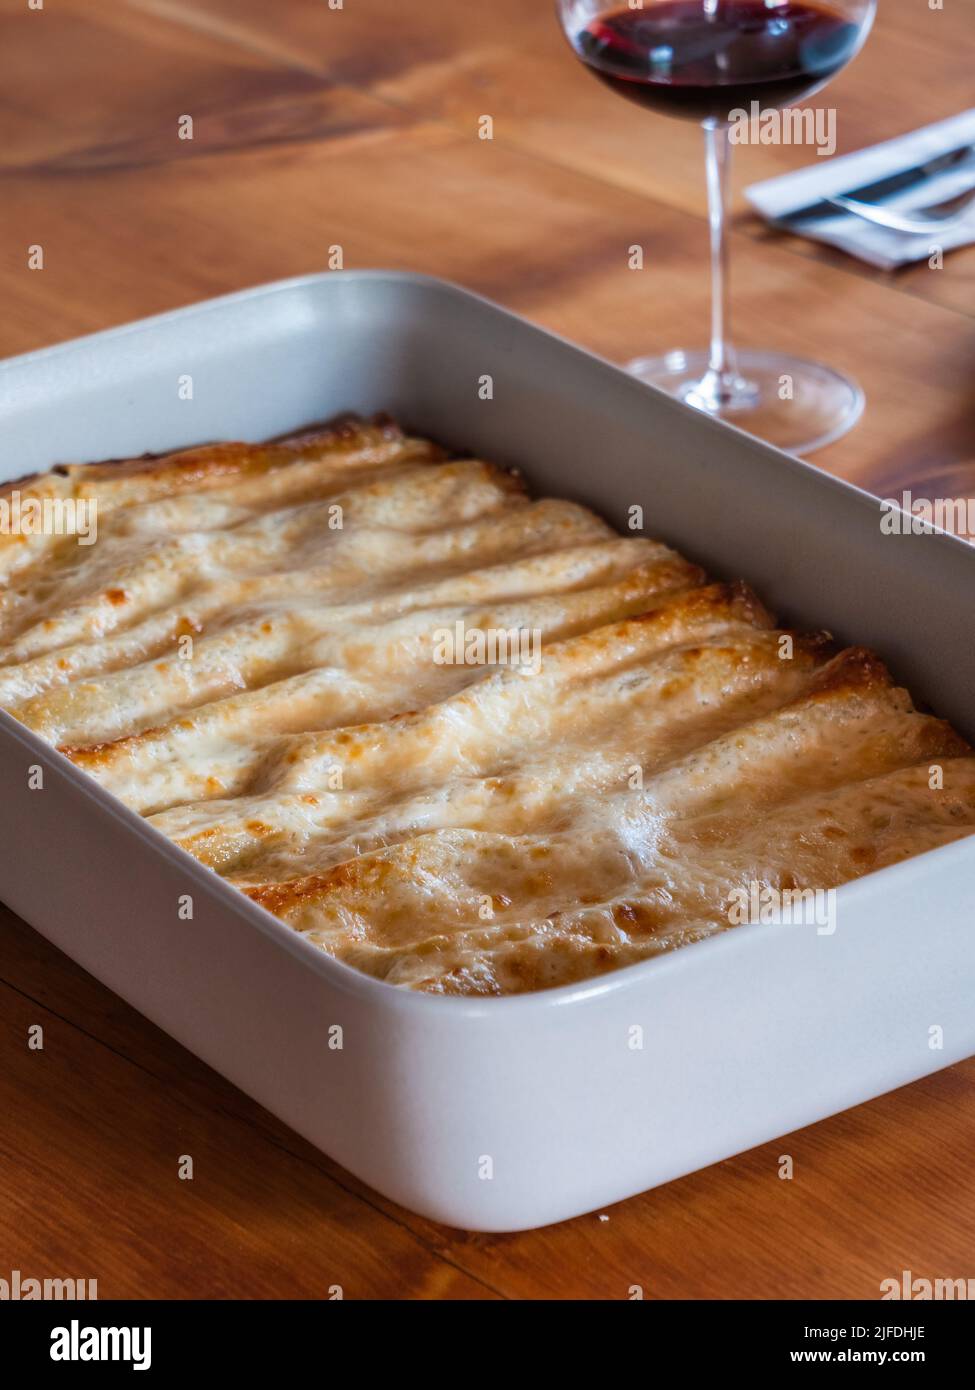 Canelones Ripieni di Carne en Bianco alla Umbra, Pasta rellena de ragout de carne blanca al estilo de Umbría Foto de stock